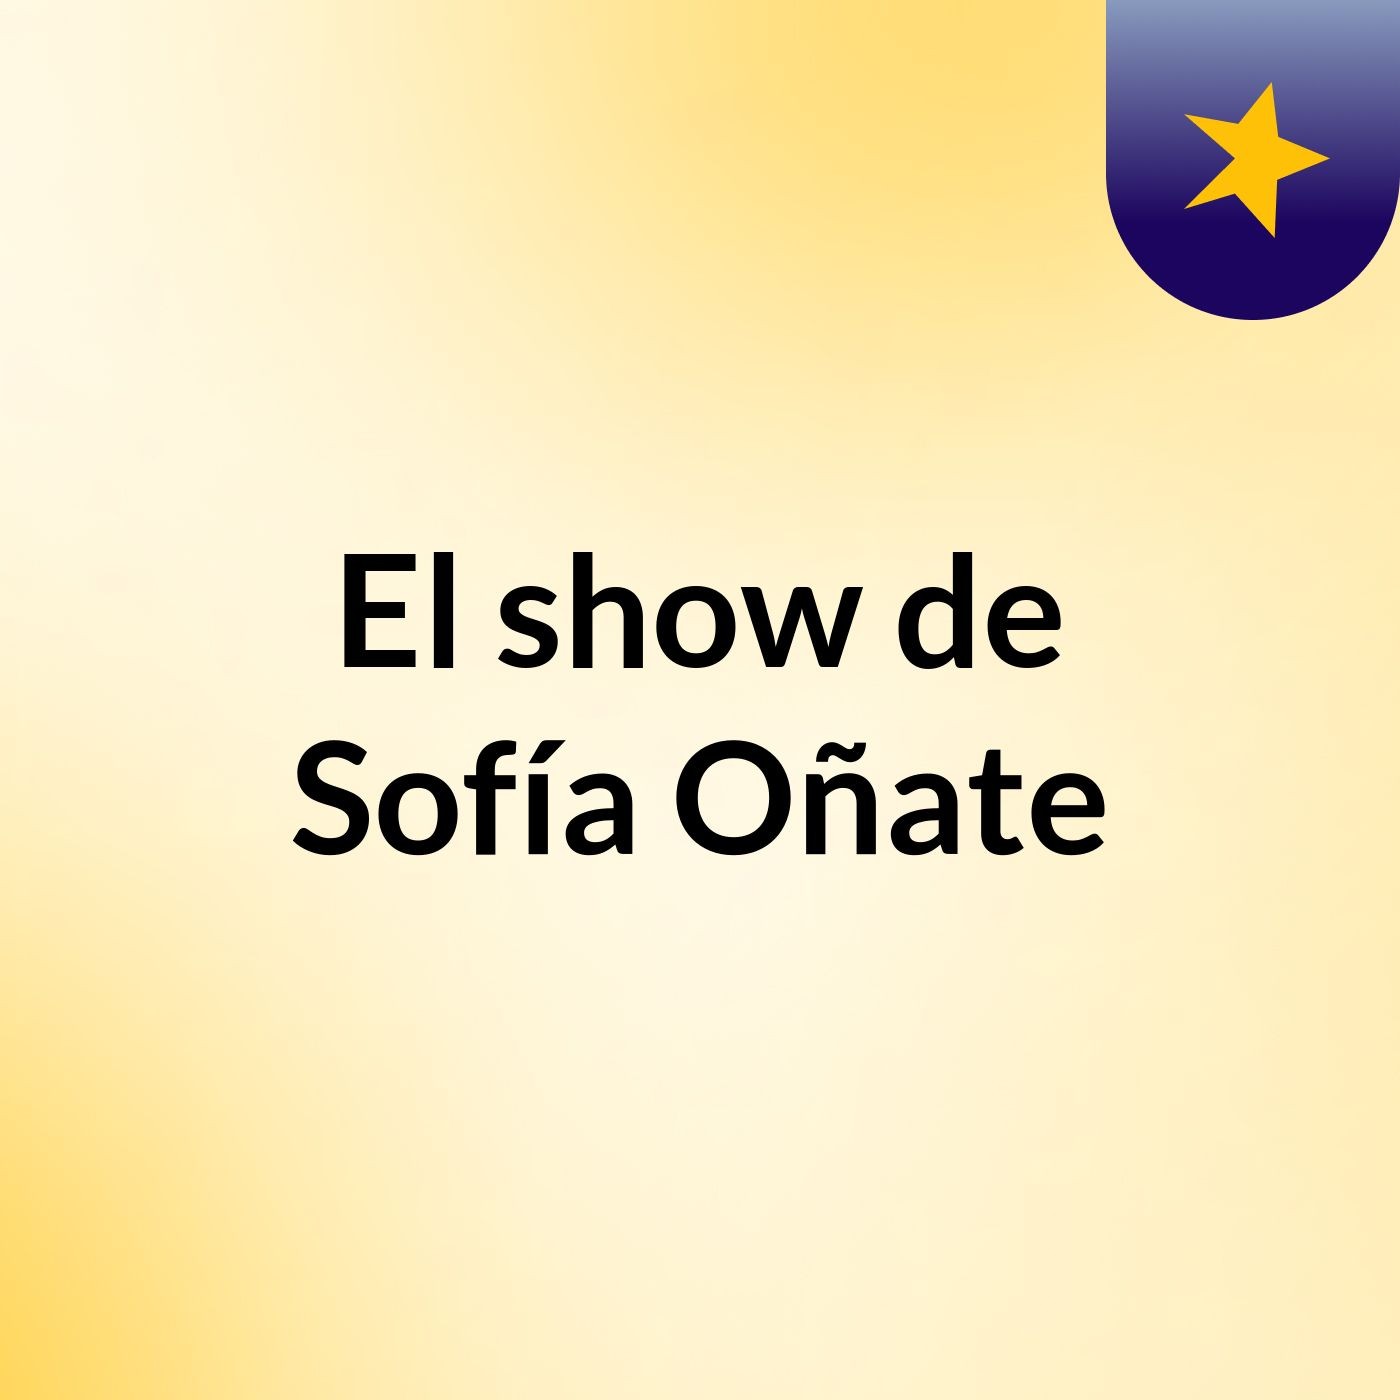 El show de Sofía Oñate